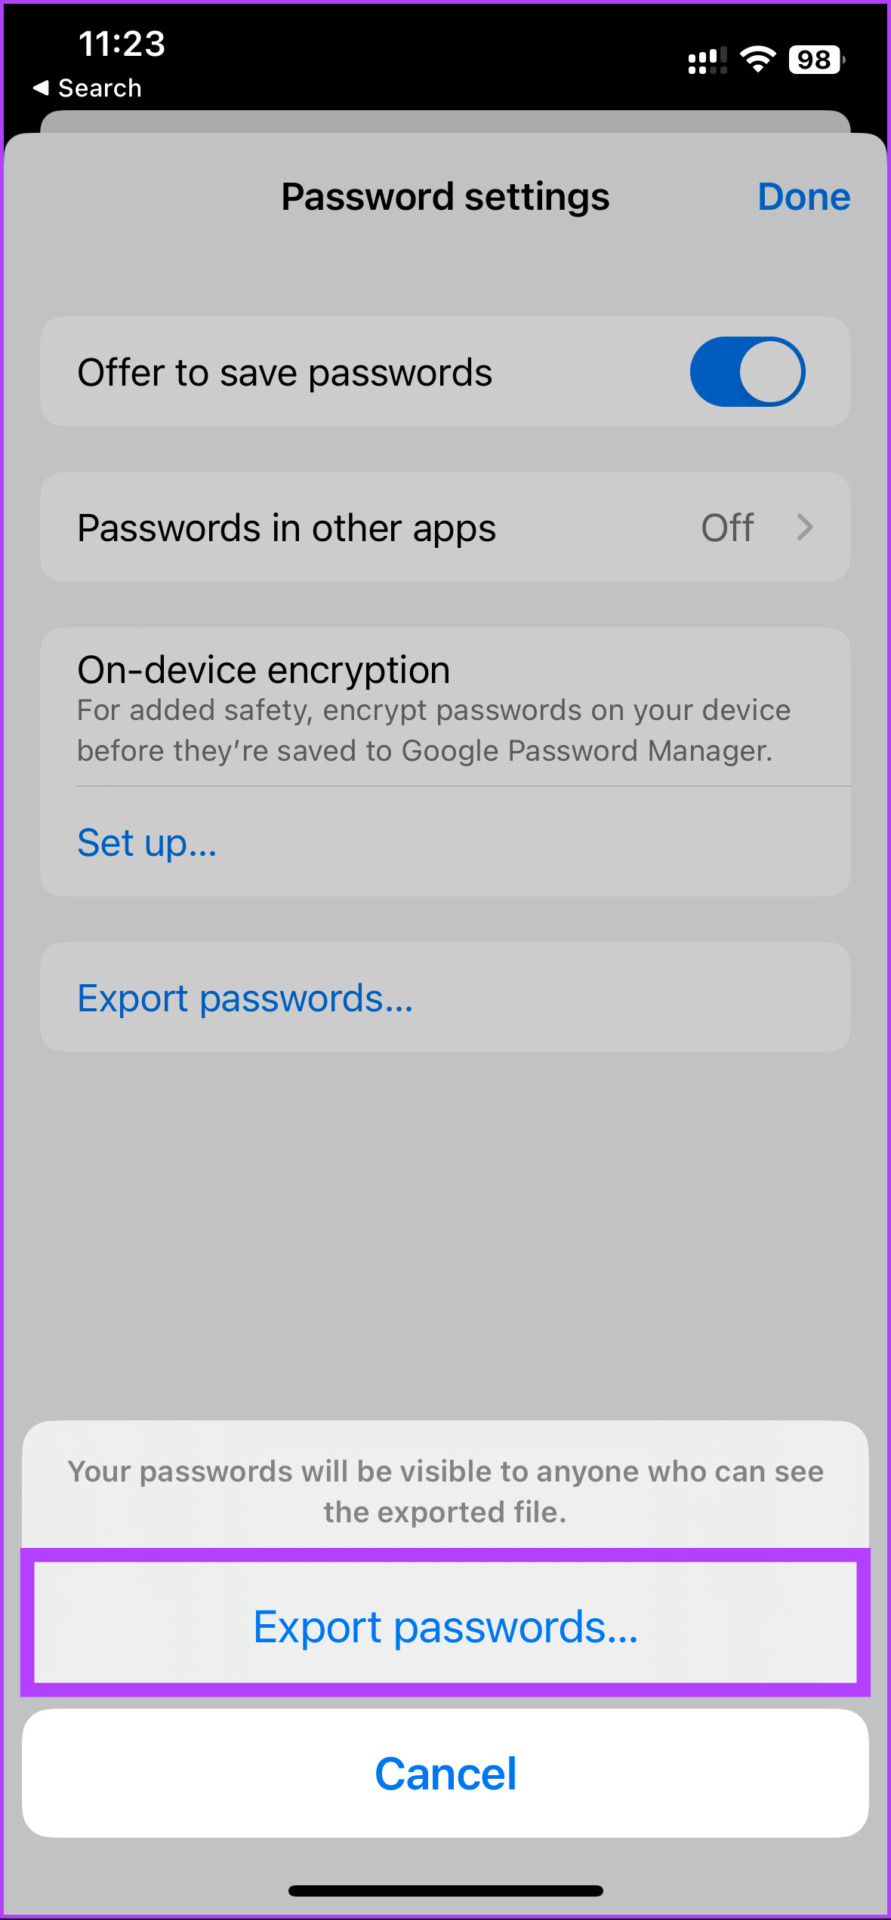 select Export passwords